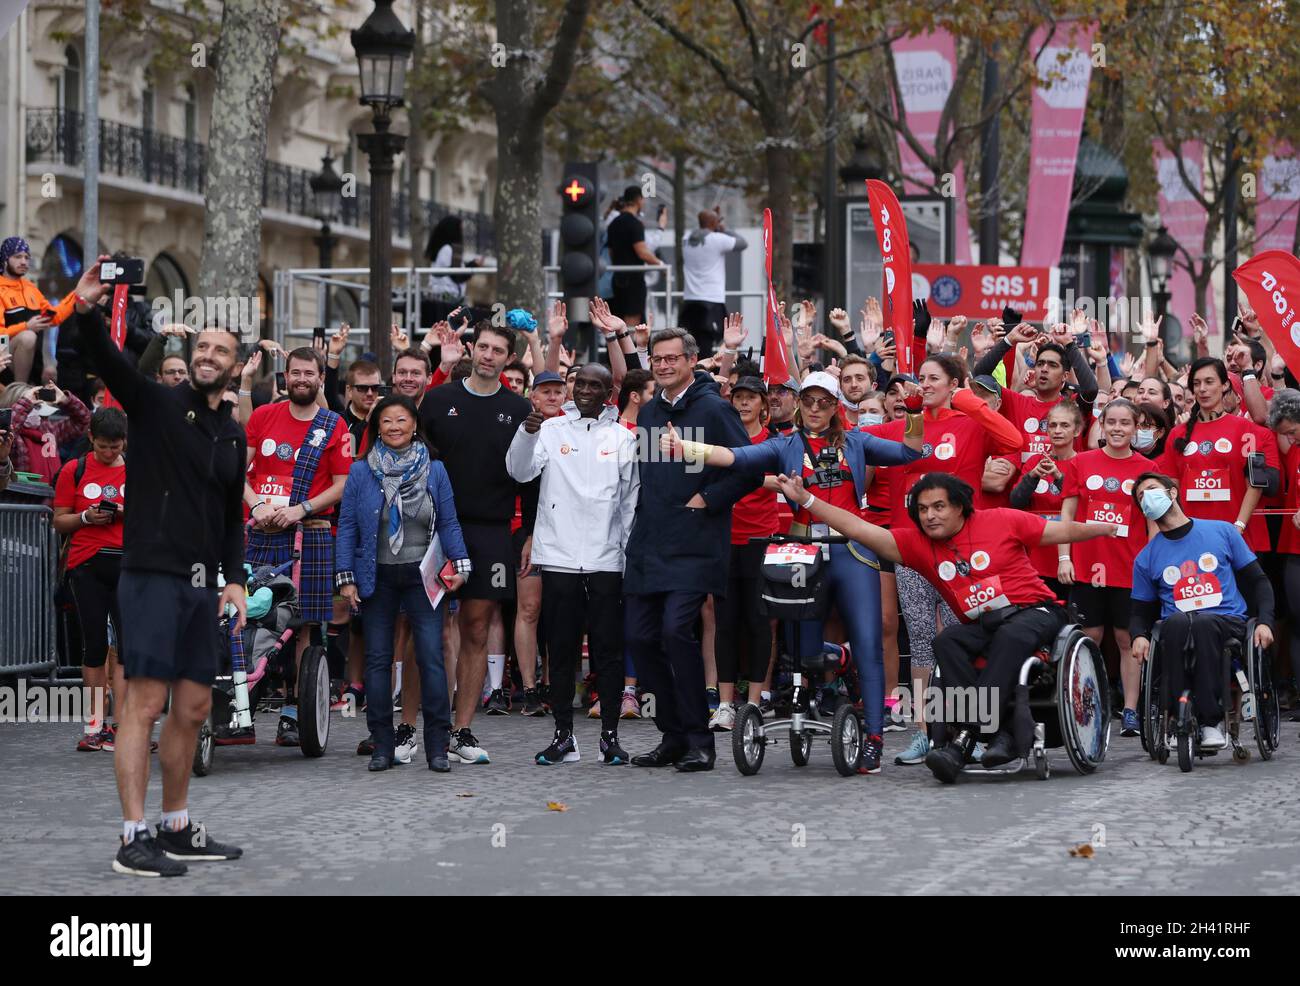 Marathon de paris hi-res stock photography and images - Alamy